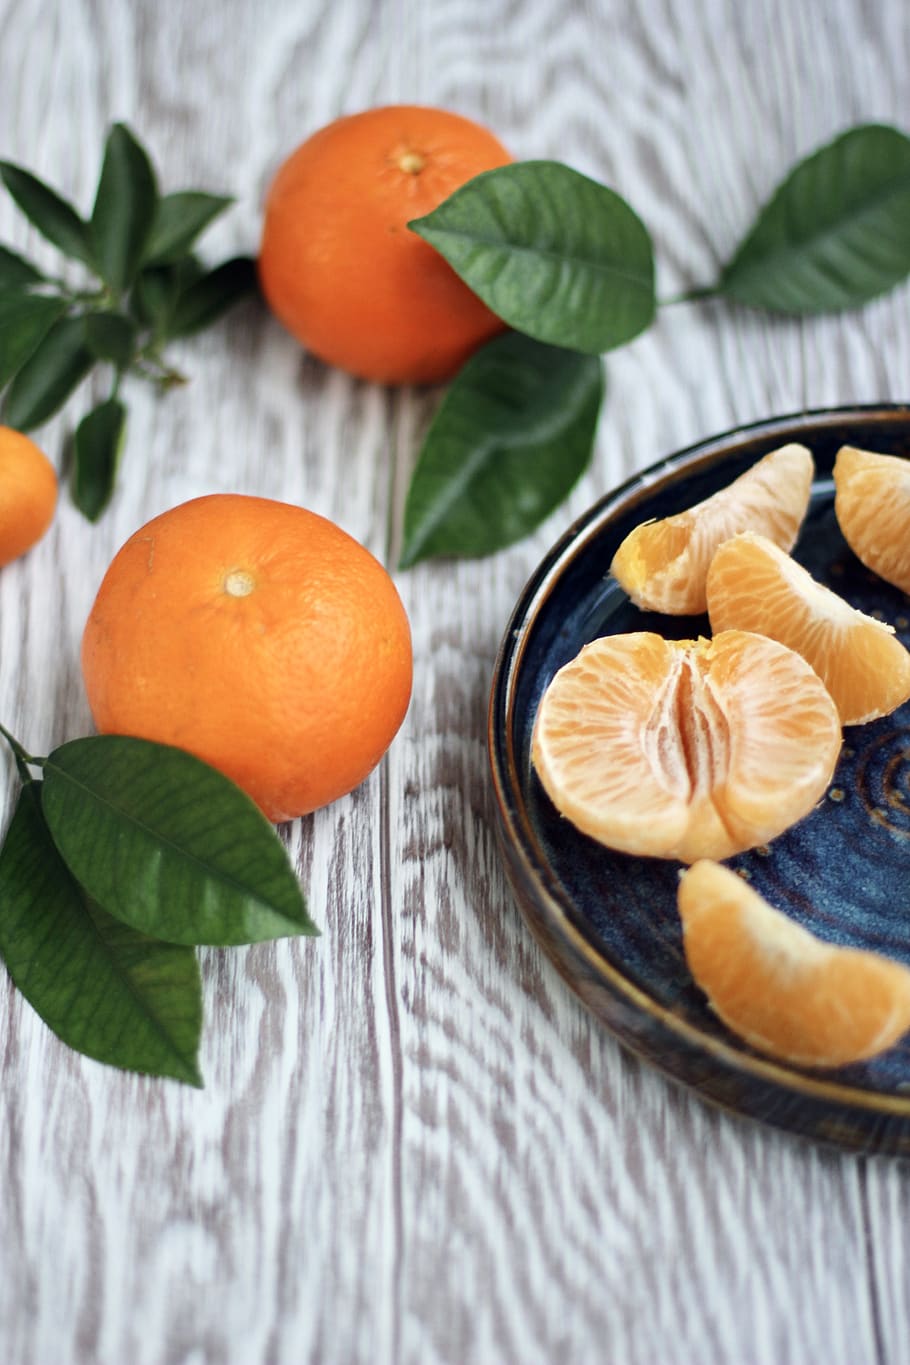 mandarinas, fin de año, cítricos, naranja, fruta, Comida, comida y bebida, alimentación saludable, frescura, color naranja